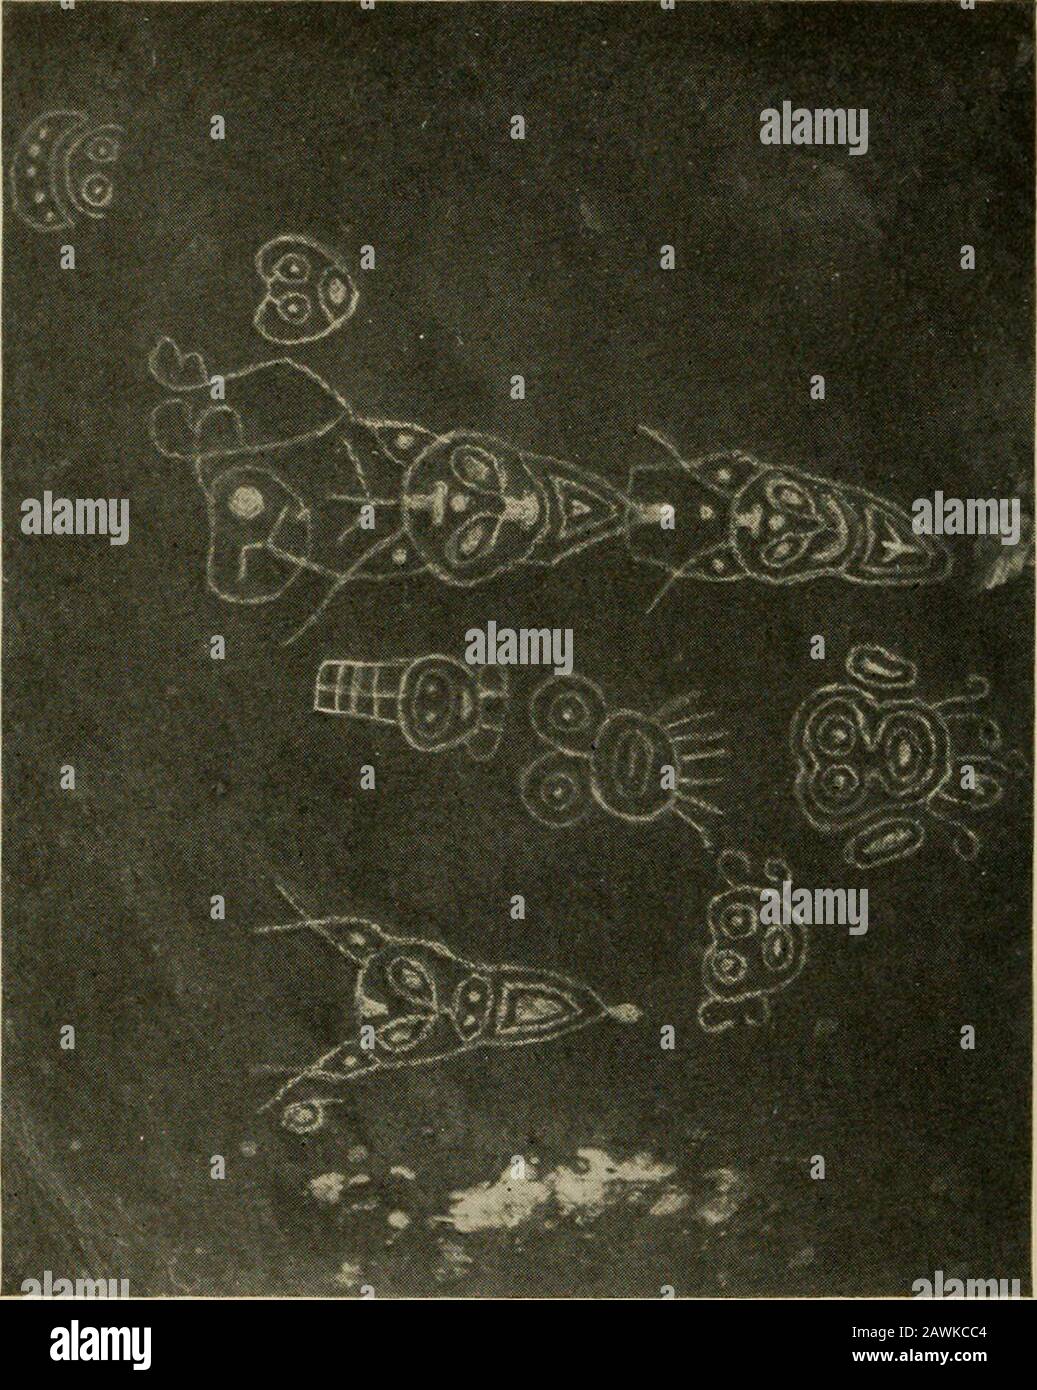 Petroglyphen von Grenada und eine vor kurzem entdeckte Petroglyph in StVincent. Wak Kultur, oder die von einigen unbekannten Menschen, die den West Indiesthem vor der Carib-Belegung zu Hause gemacht haben, als dass sie zur Carib-Zeit gehören. Im Zusammenhang mit Untersuchungen dieser Art, der Frage nach der Absicht und der Pur-pose der Herstellung der Petroglyphskräfte selbst nach Uso Kann Nicht akzeptiert werden, obwohl dies behauptet wurde, dass es sich um bedeutungslose Schräge handelt. In unserem Bemühen, eine akzeptable Theorie zu finden, können wir durch eine Betrachtung der Ansichten verschiedener Autoren unterstützt werden, die auf t geschrieben haben Stockfoto